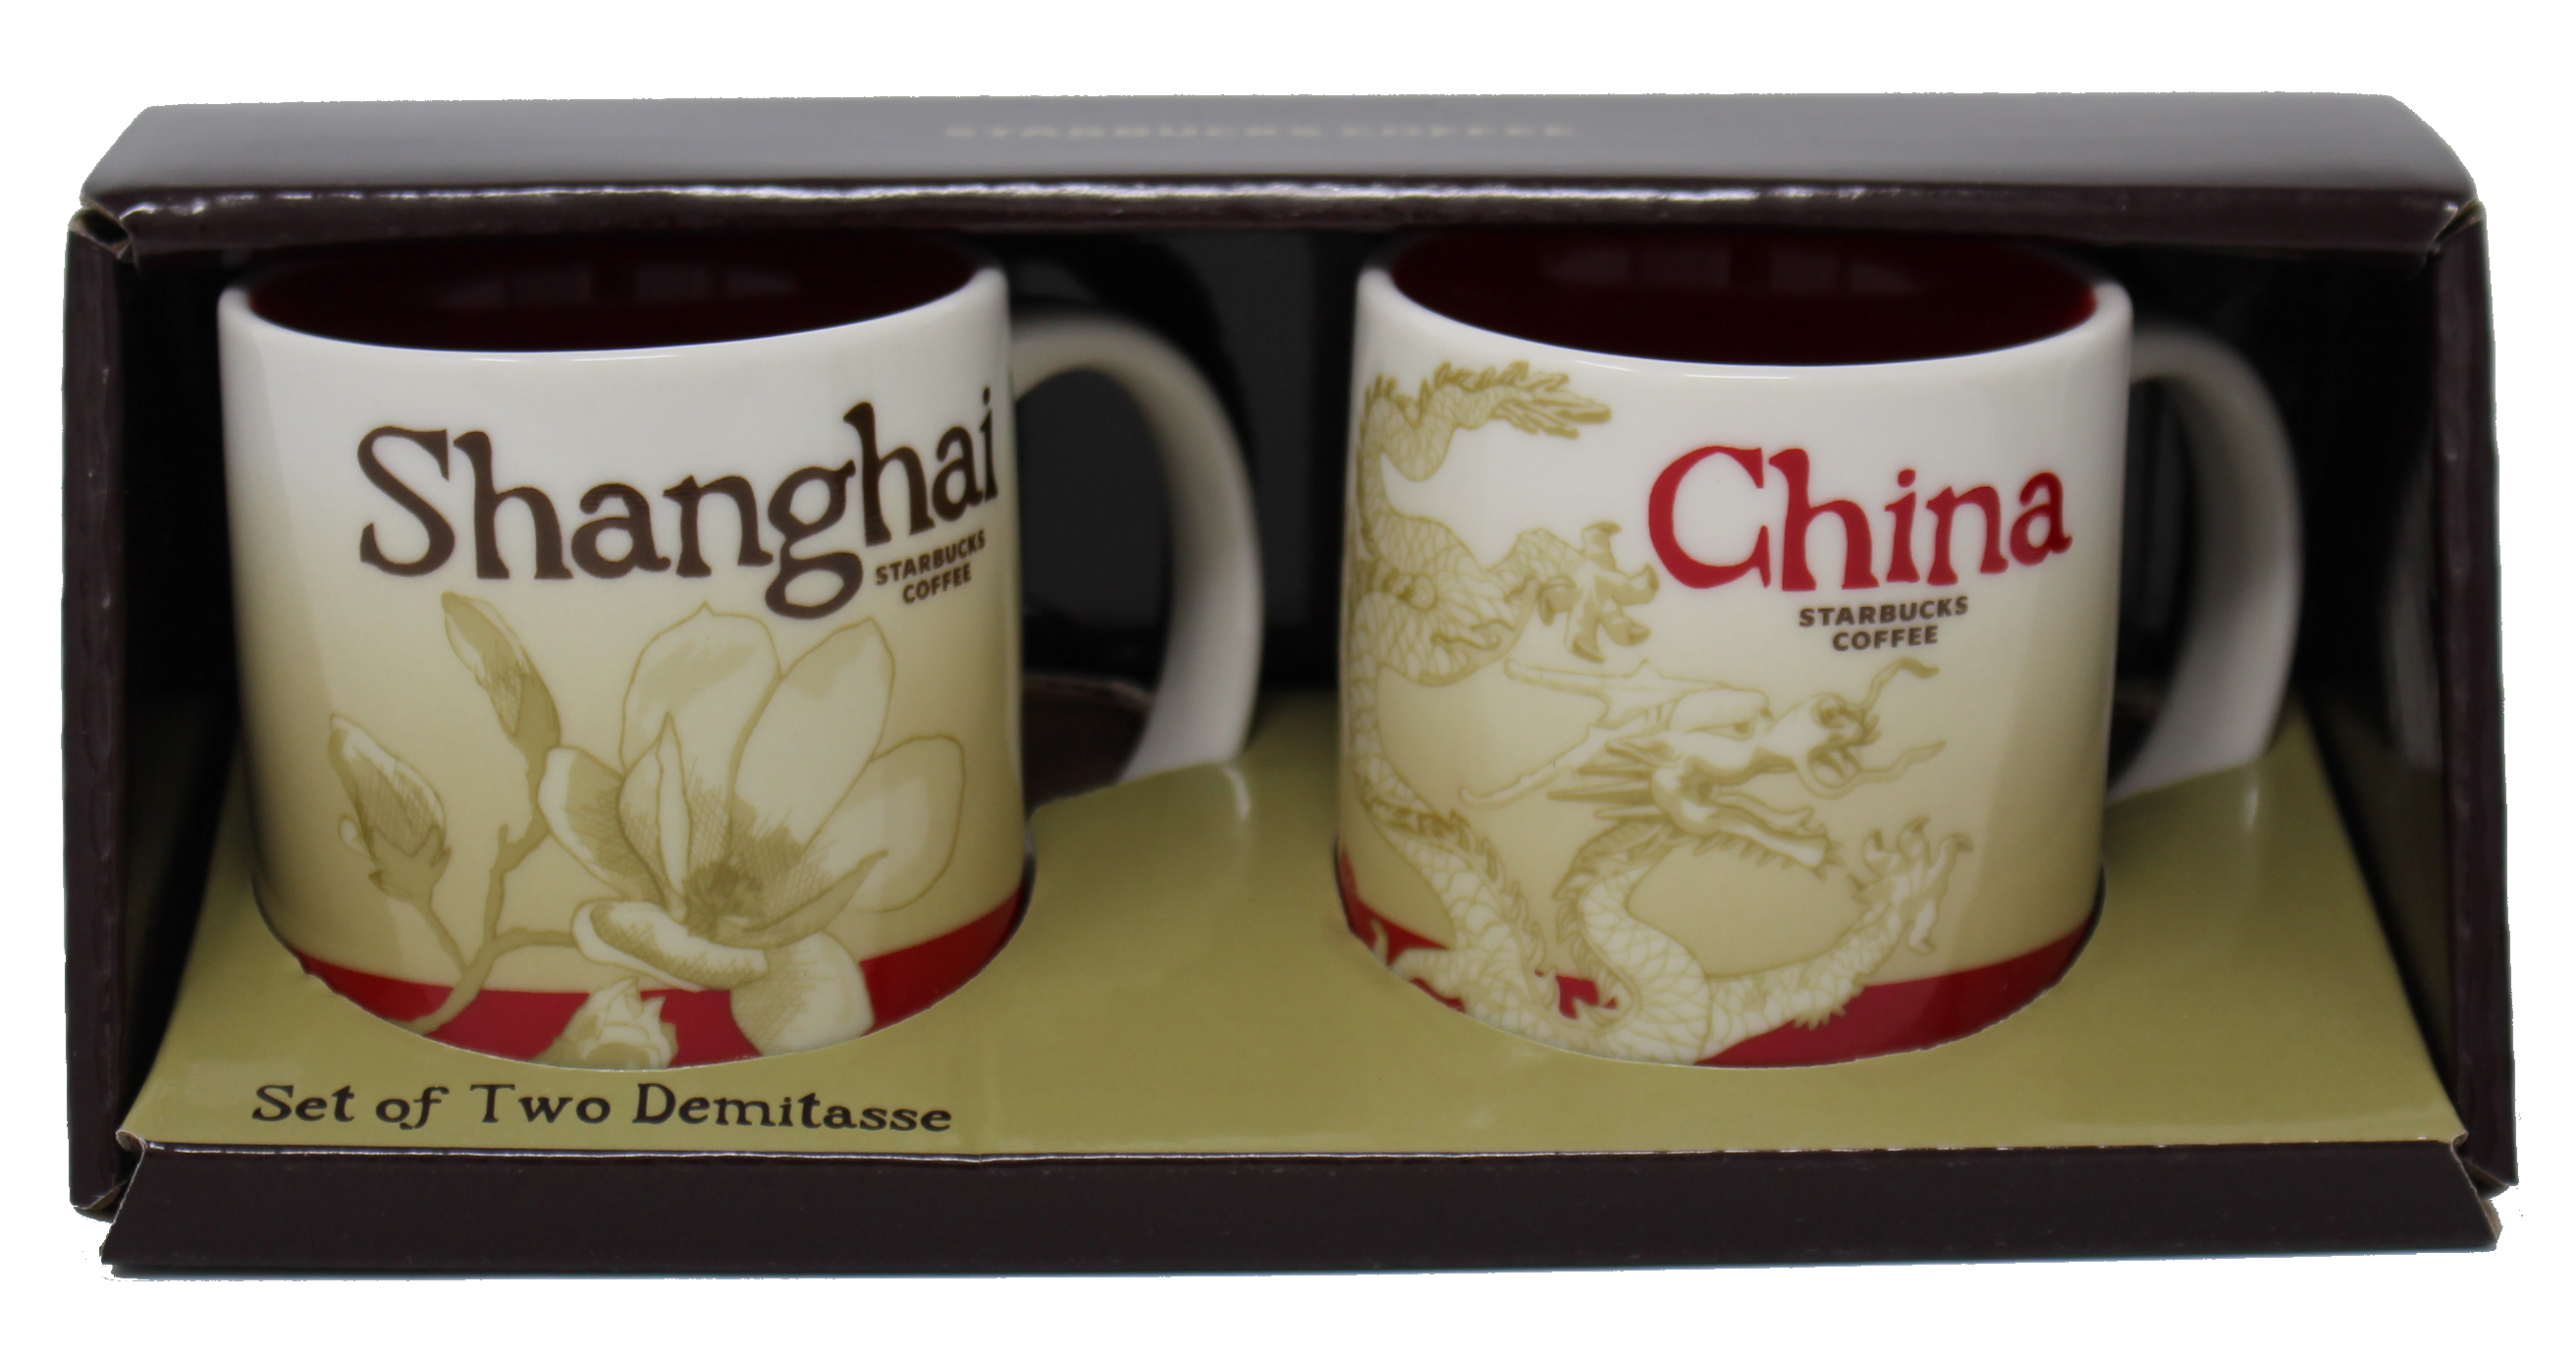 Starbucks Global Icon Series Shanghai and China Demitasse Mugs, 3 Oz (2 Pack)